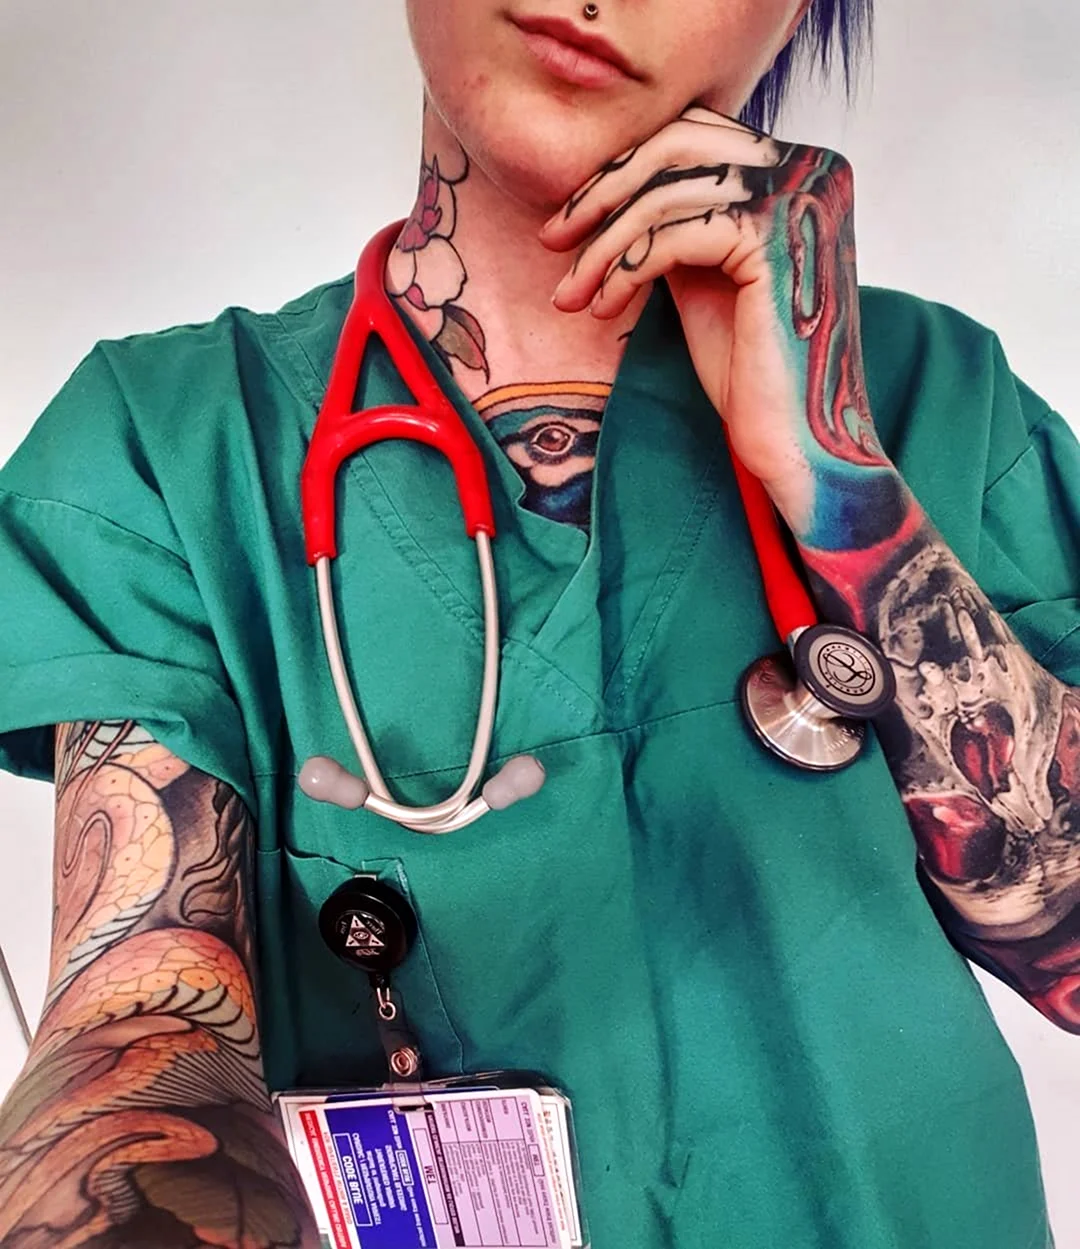 Сара грей татуированный врач